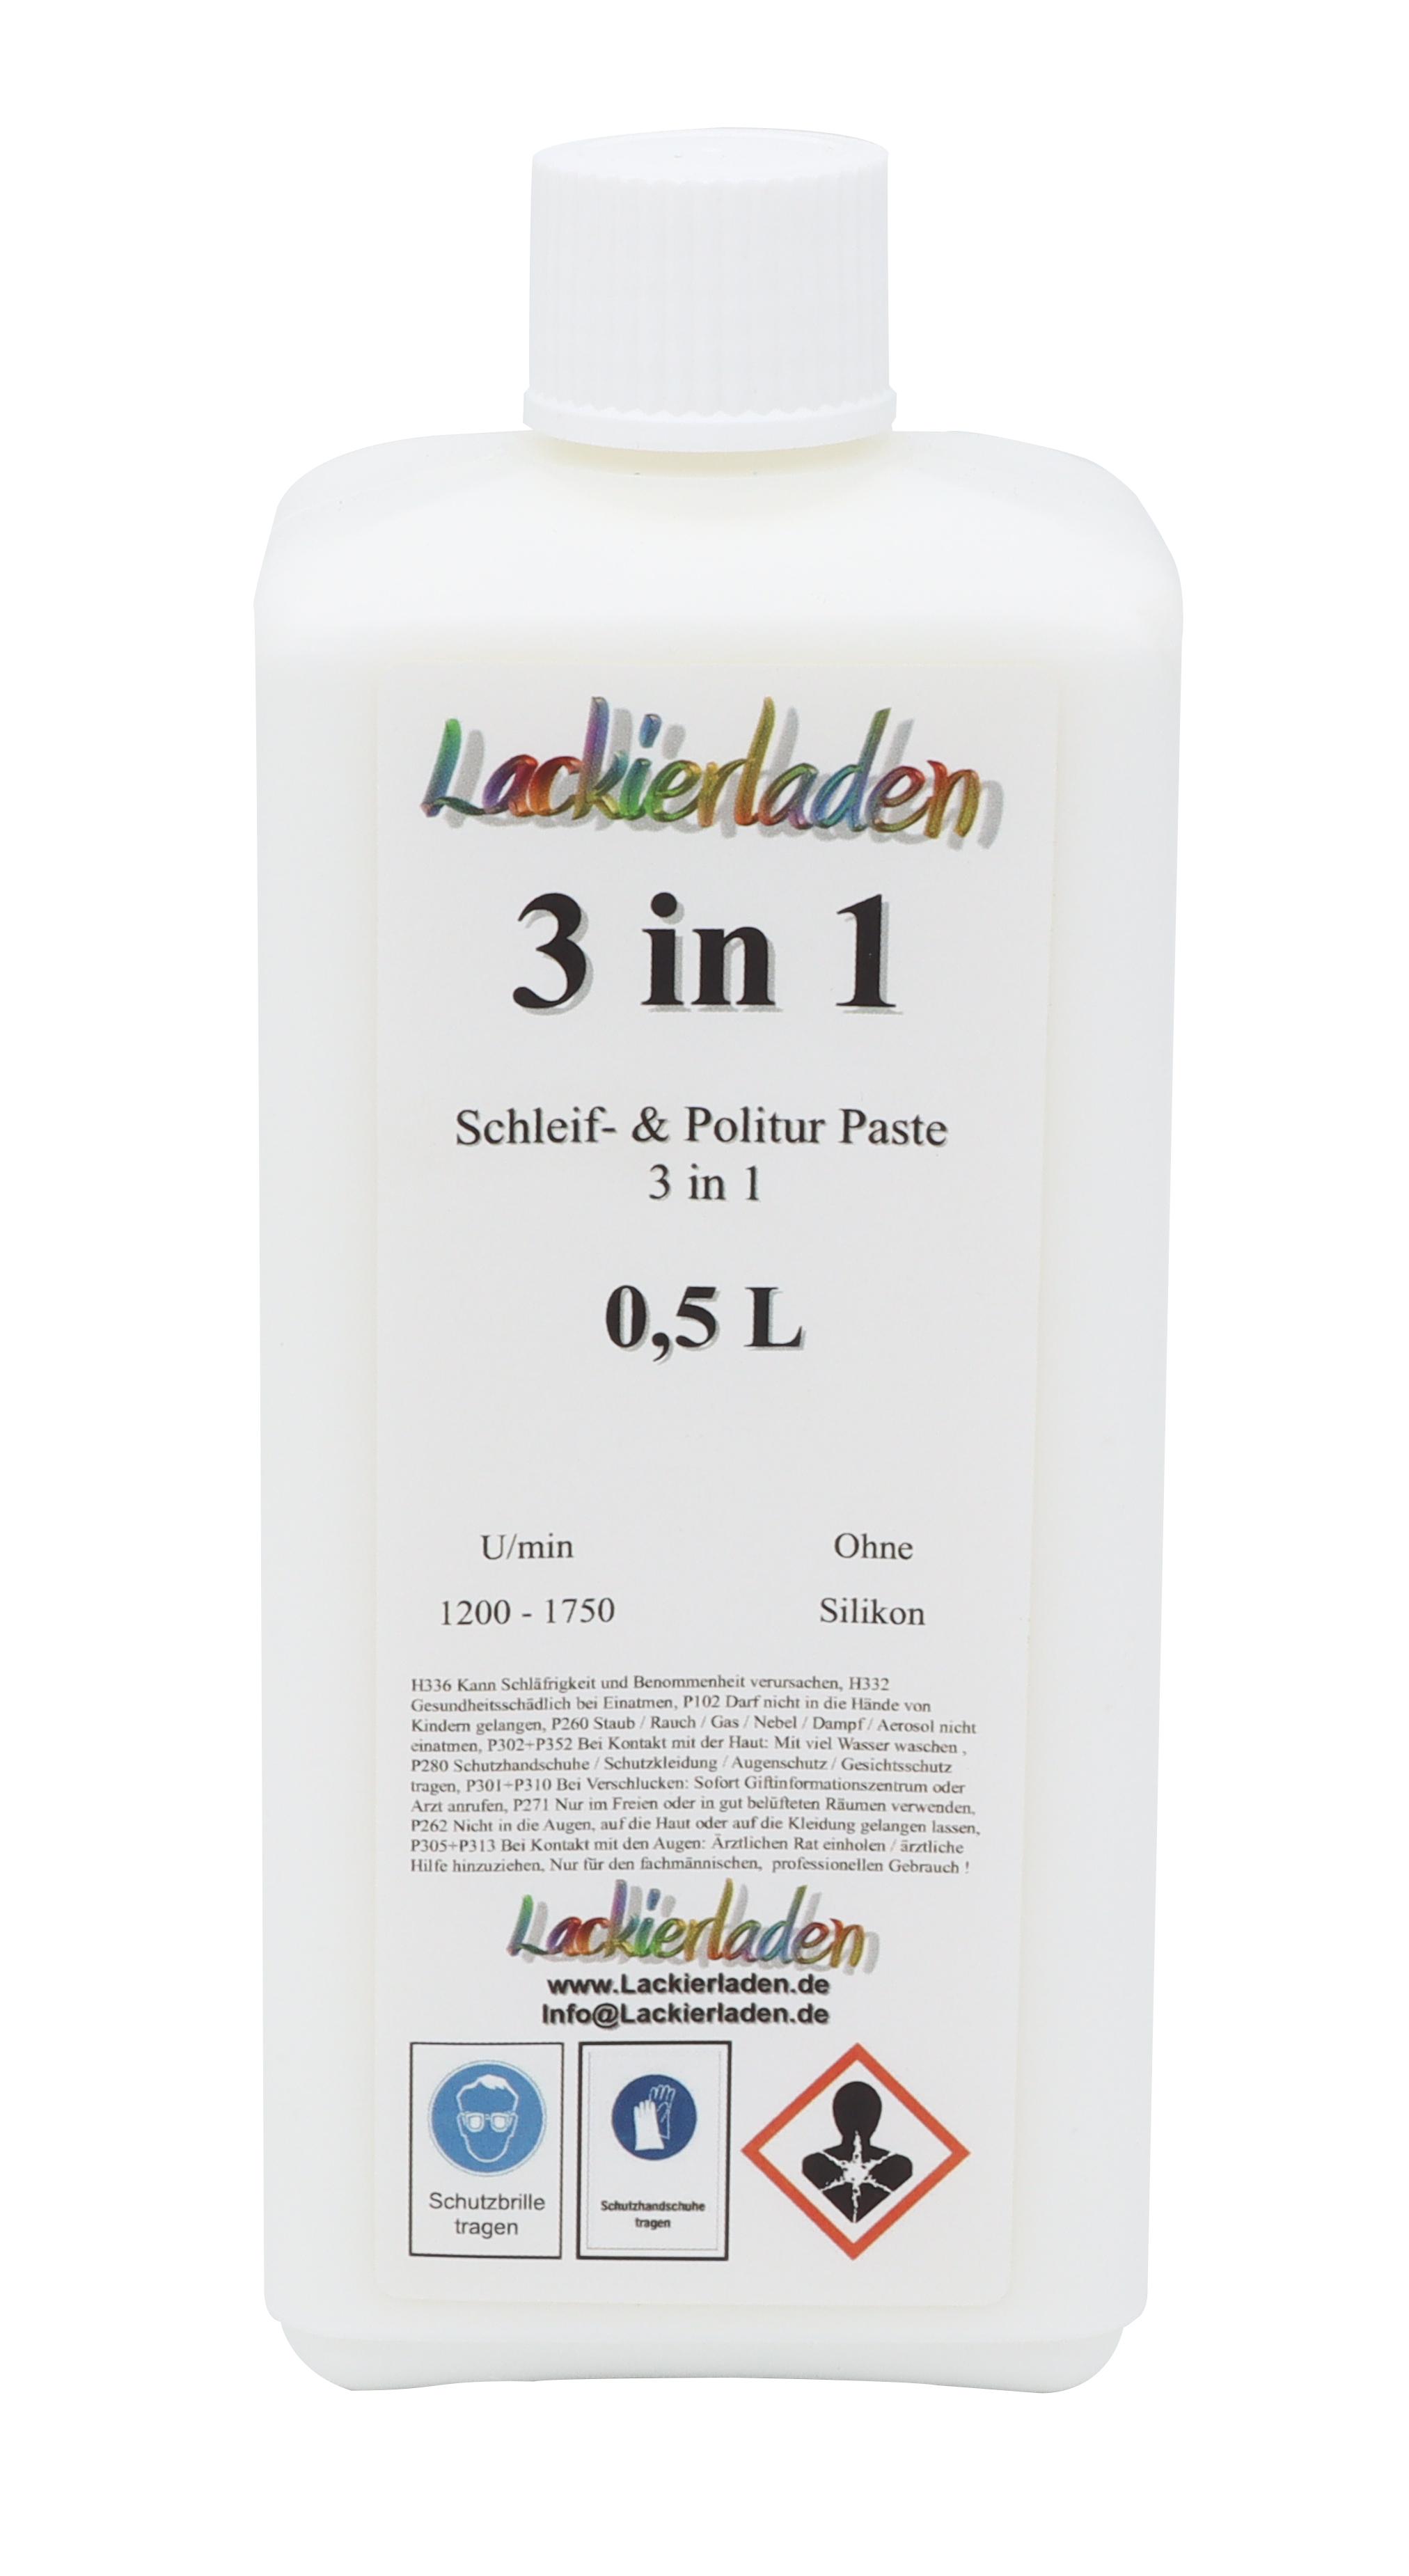 Poli 3 in 1 Schleif- & Politur Paste grob 0,5 L | Polierpaste Schleifpaste polieren